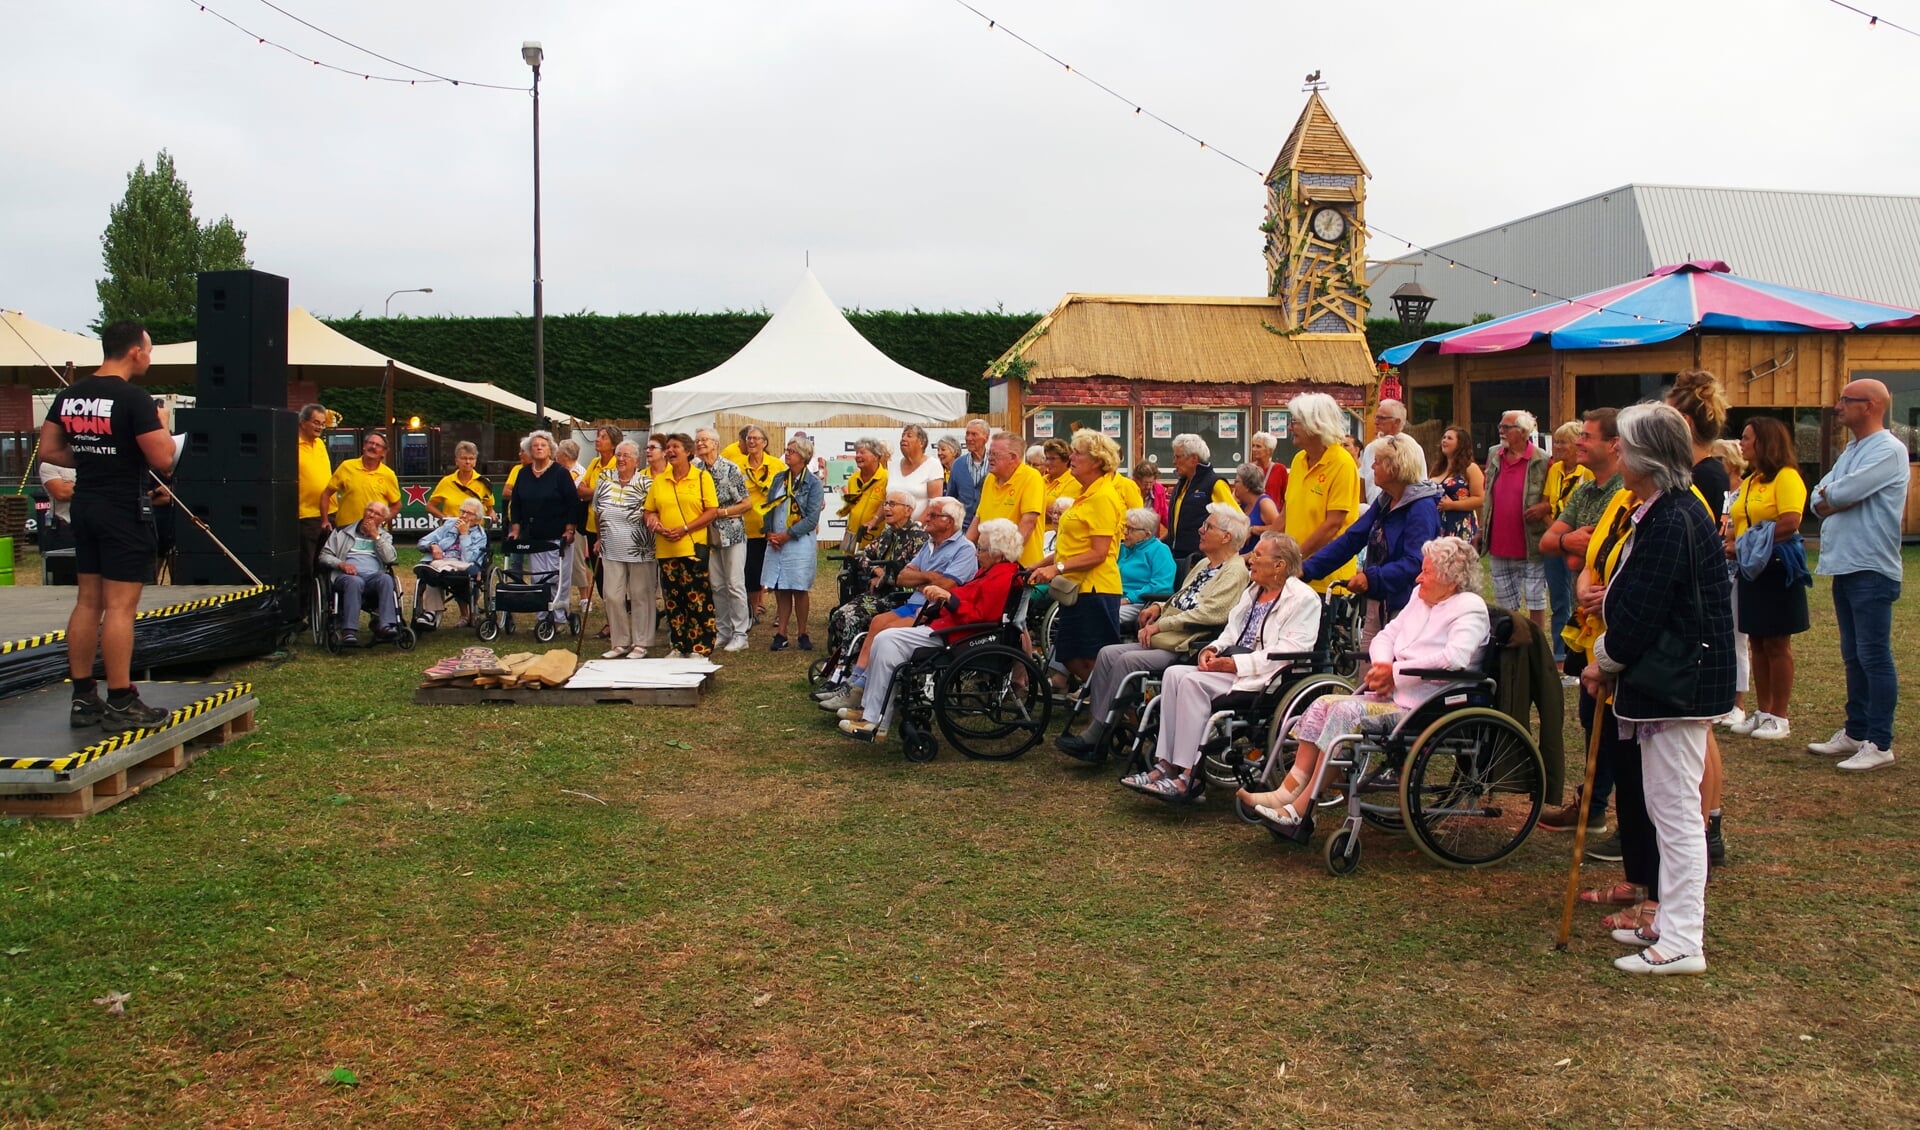 De Zonnebloem bracht met bijna 50 mensen een bezoek aan het festivalterrein. 